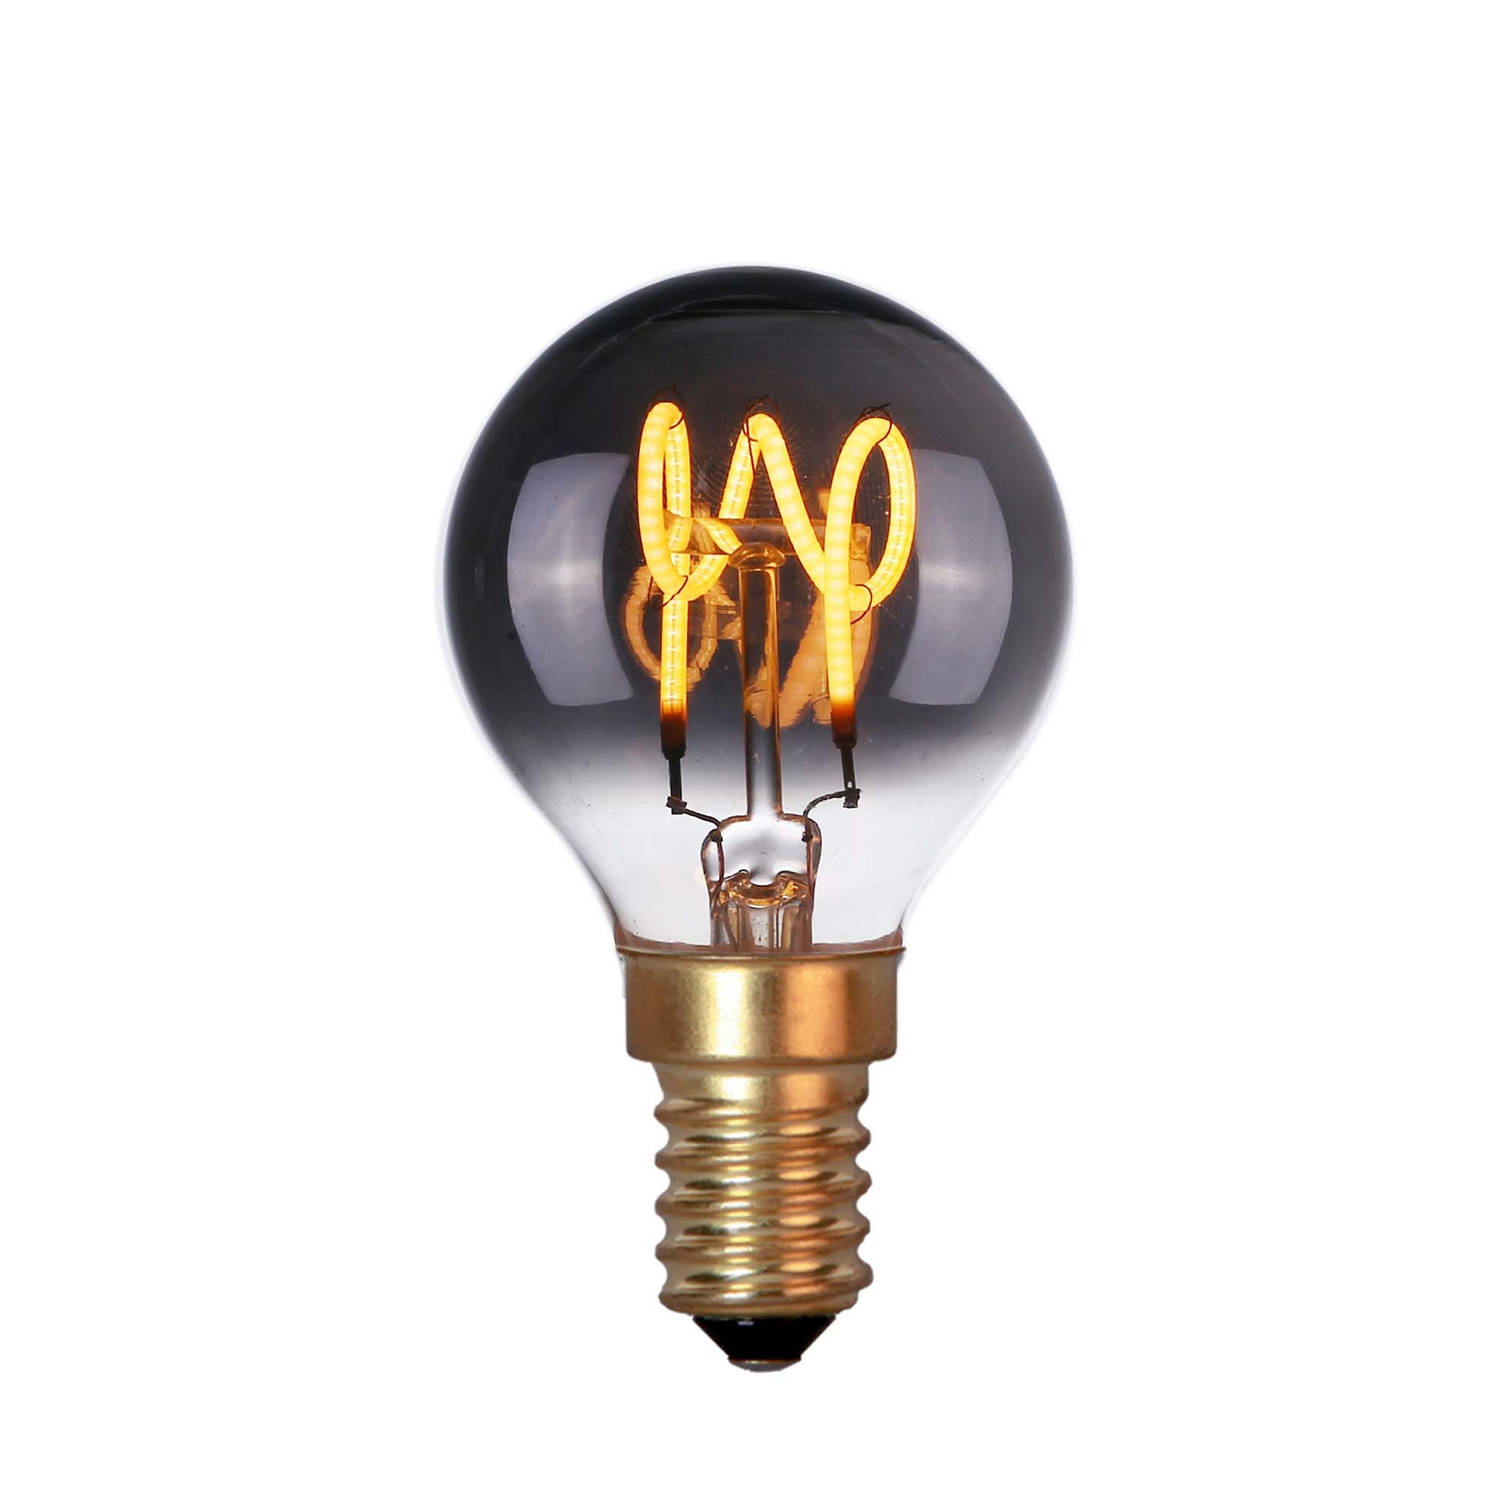 Highlight Lamp Led E14 Kogel 4w 60 Lm 2200k Dimbaar Rook